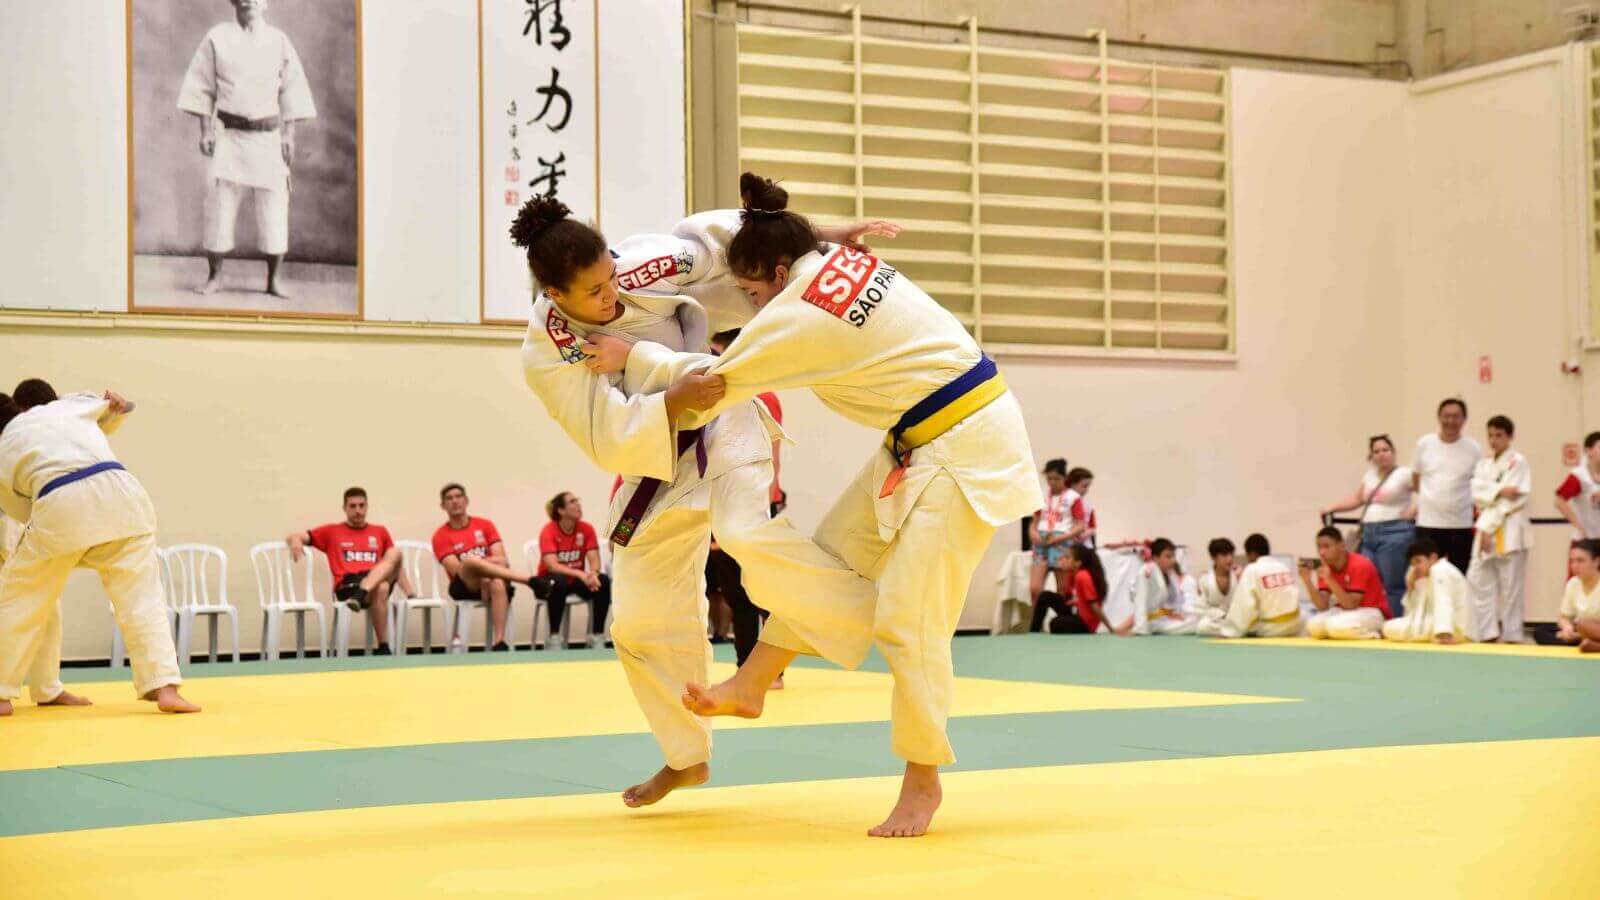 Duas mulheres em um combate durante uma competição de judô, usando quimonos brancos com detalhes em vermelho do Sesi-SP. Elas estão em um tatame de cor amarela e verde, enquanto outros competidores e espectadores assistem ao fundo.